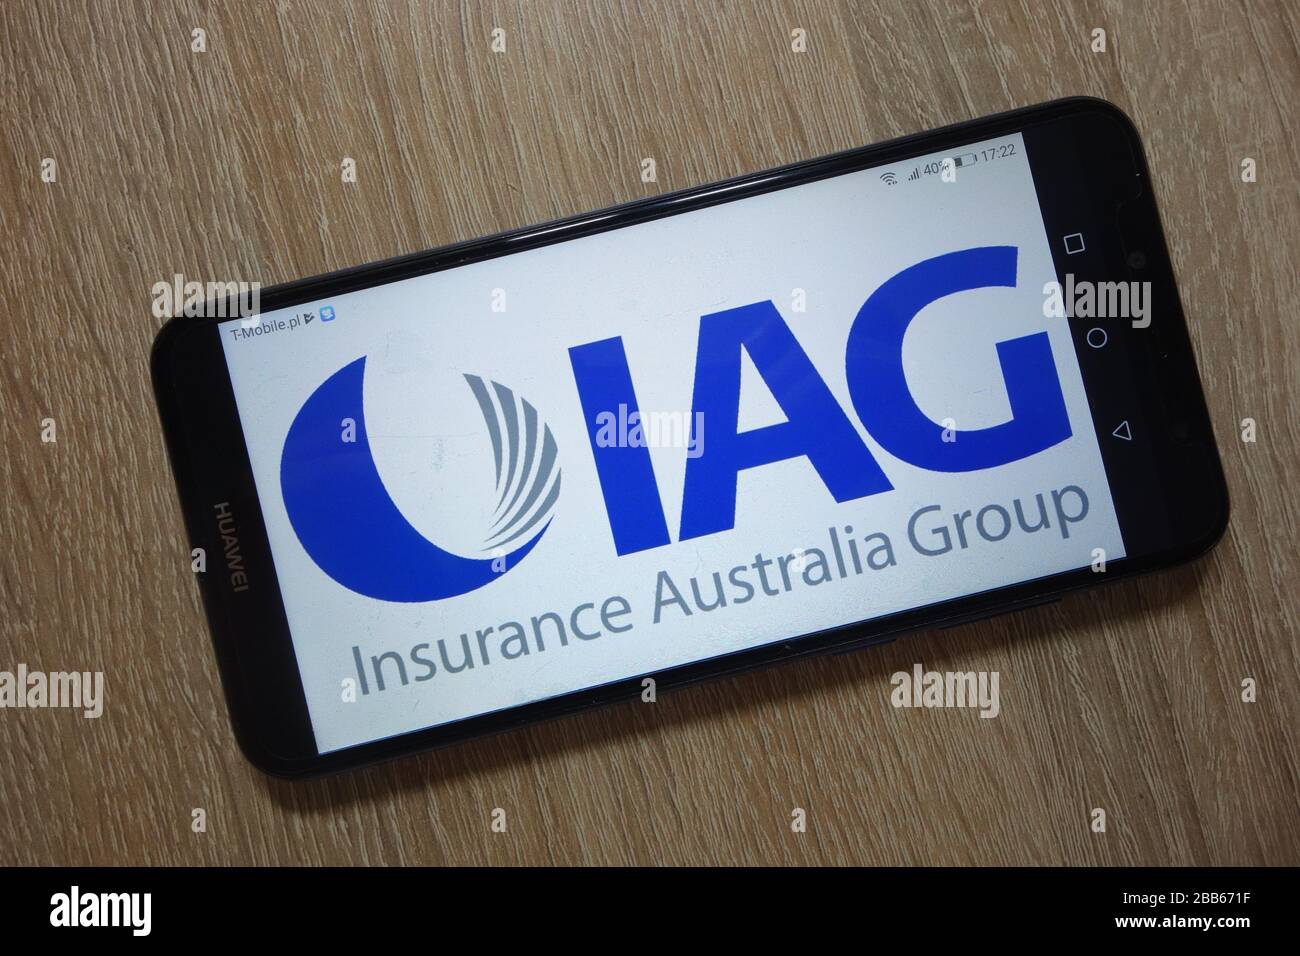 Logo du groupe assurance Australie affiché sur le smartphone Banque D'Images